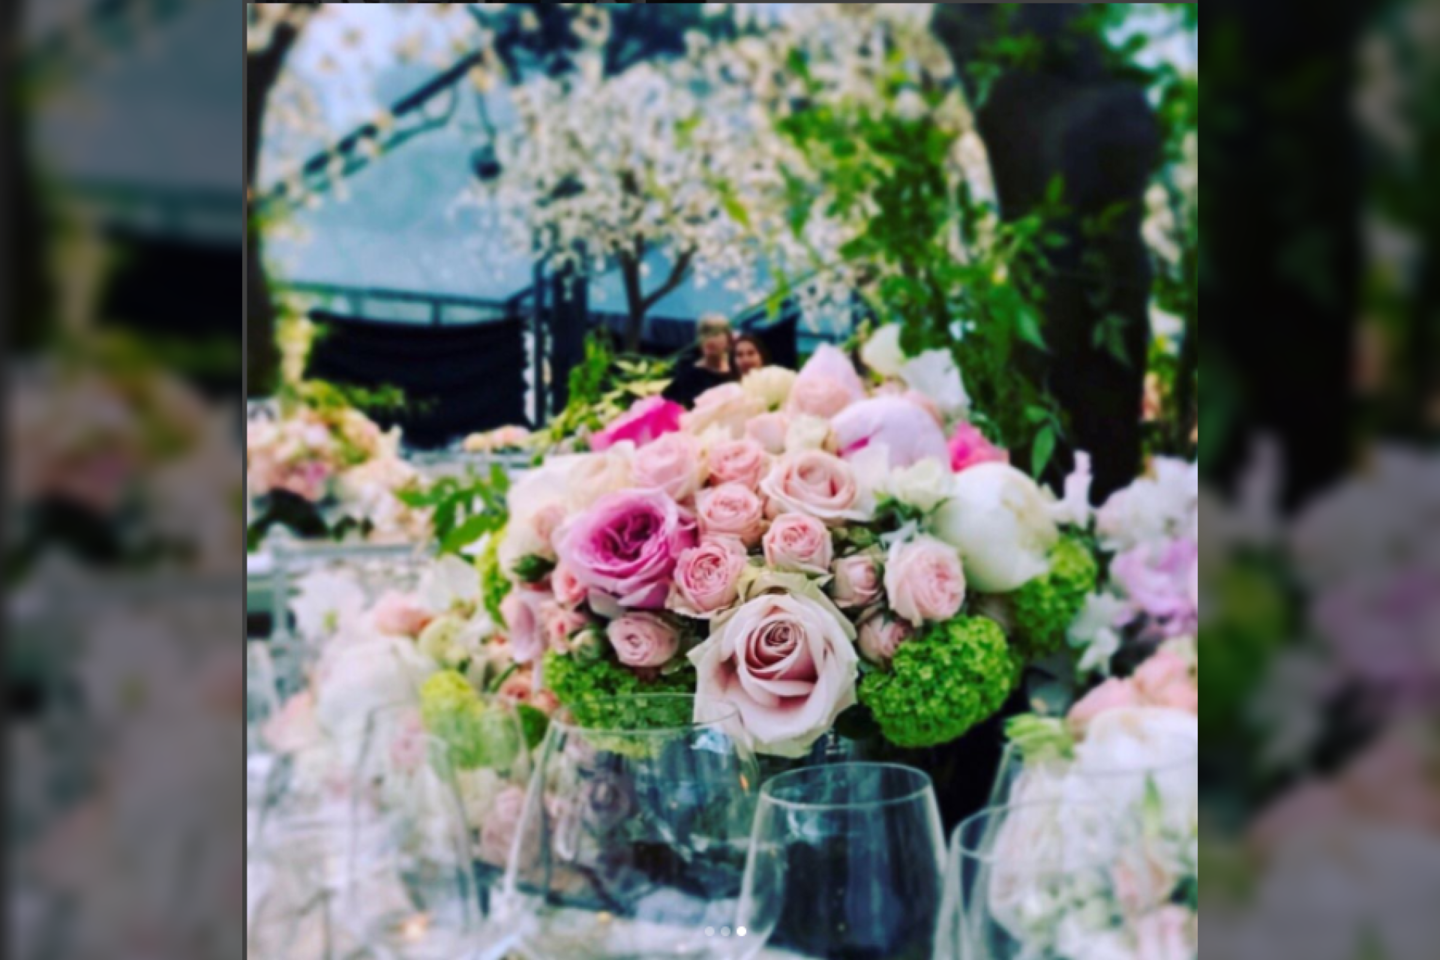  Pippos Middleton vestuvių dekoracijos.<br>,,Instagram'' nuotr.